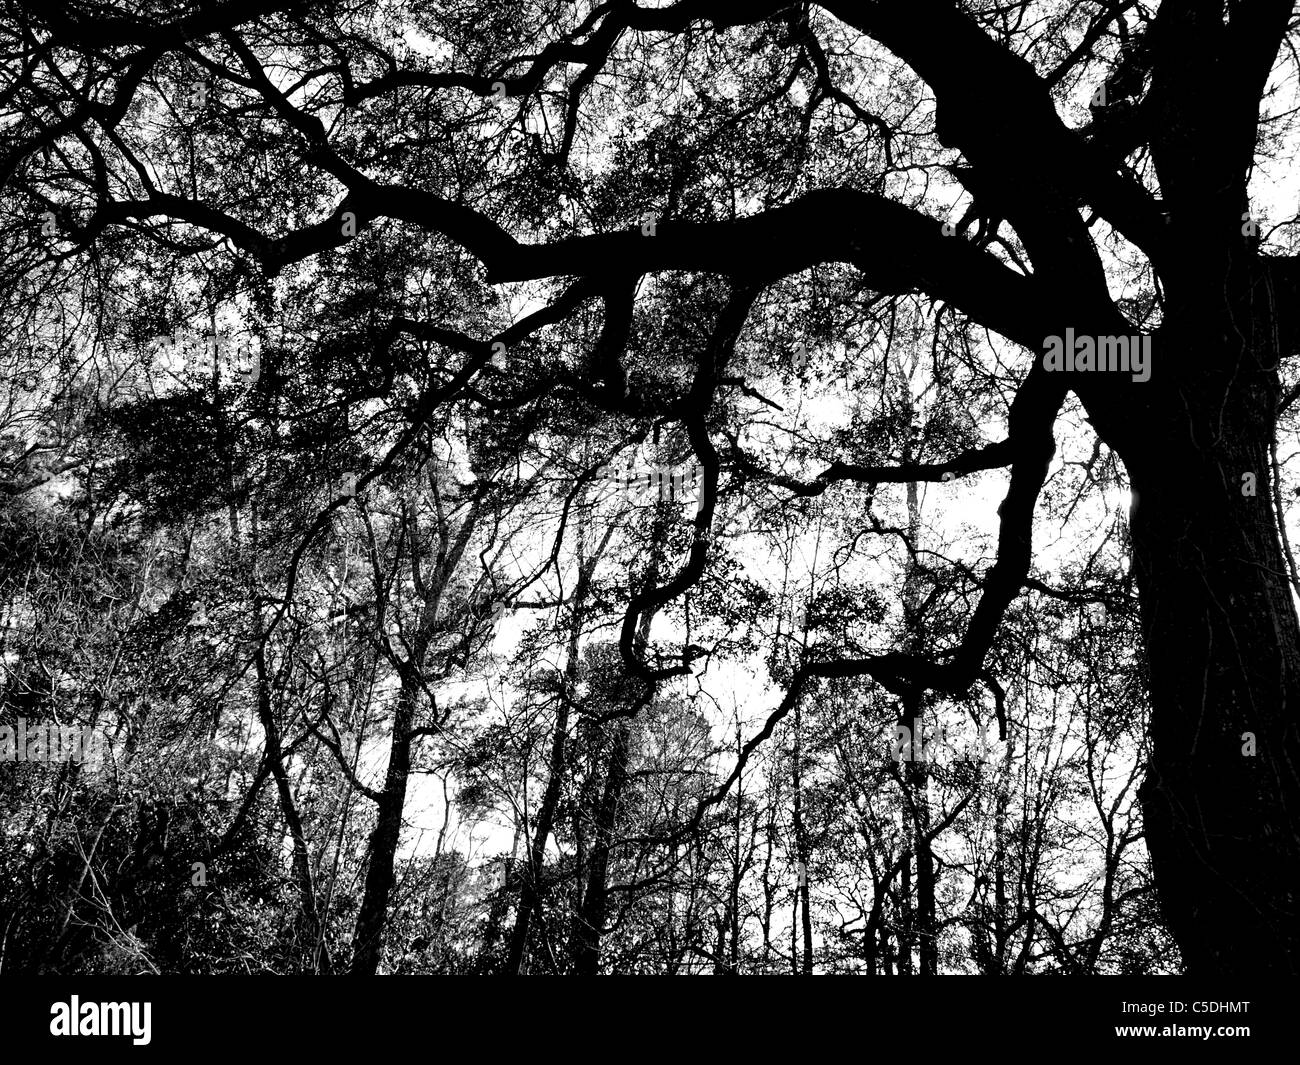 Arbre arbres ciel forêt voir l'écorce feuilles tronc membres inférieurs contraste silhouette pin oak Banque D'Images